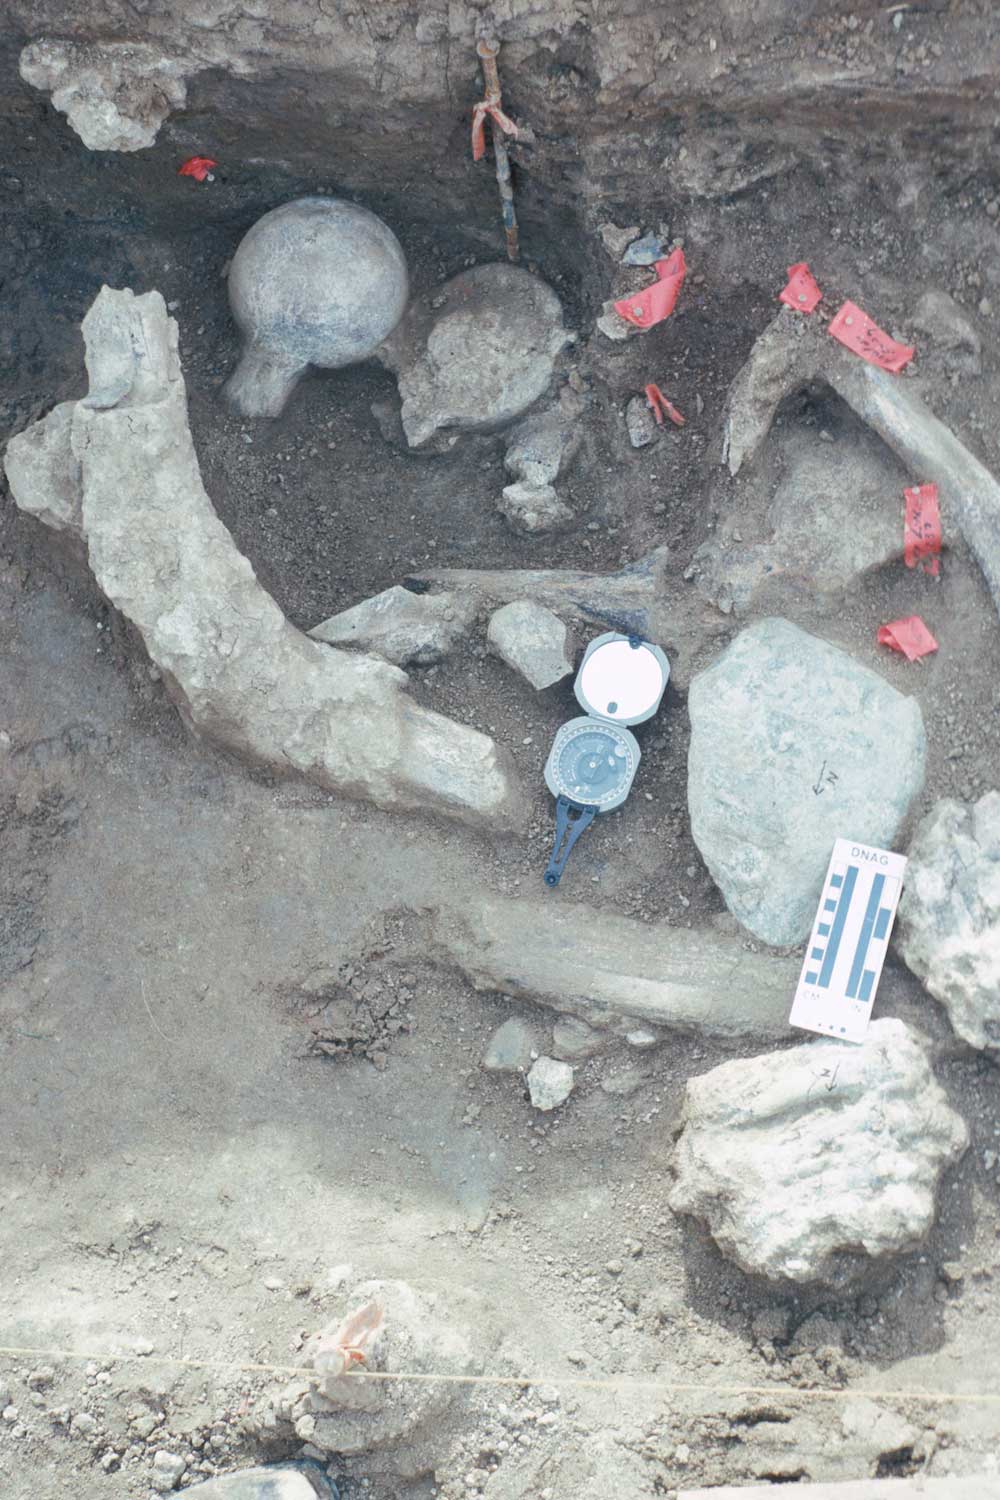 丸石と共に見つかったマストドンの骨の化石。画像上部の2つの大腿骨頭は破壊のされ方は同じだが、1つは上向きで1つは下向きという不自然な配置で見つかった。左上に斜めに横たわっているのは肋骨。